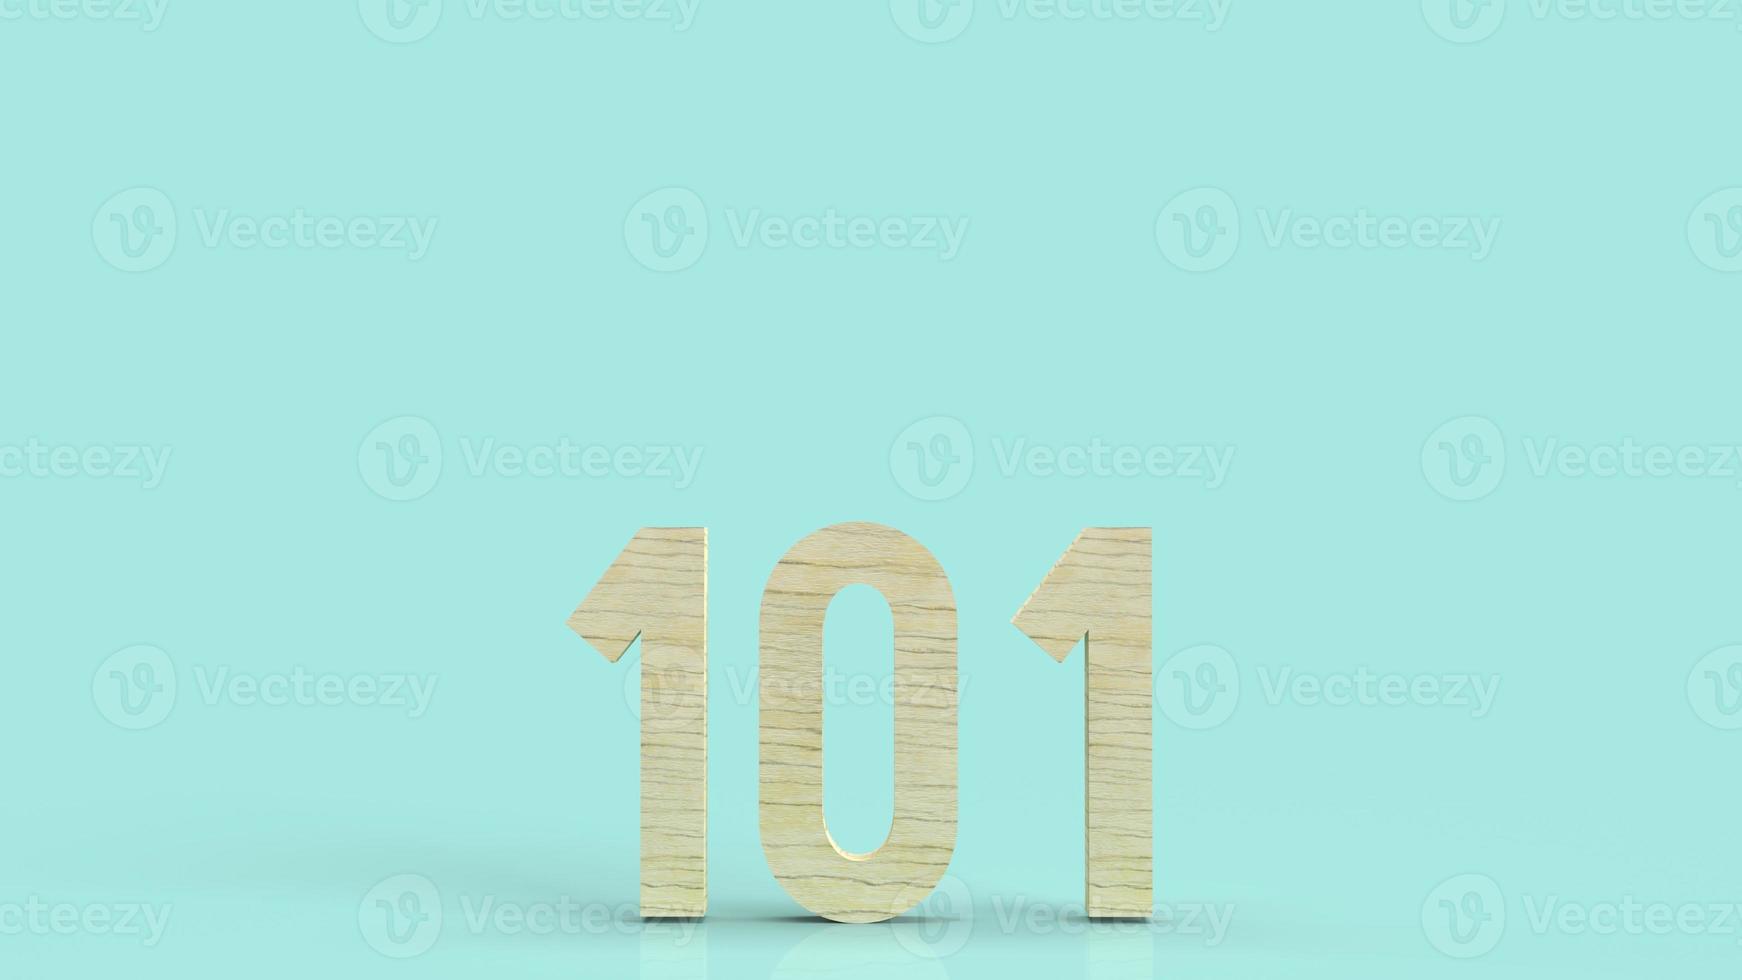 101 hout nummer 3D-rendering op blauwe achtergrond symbool voor beginners concept foto